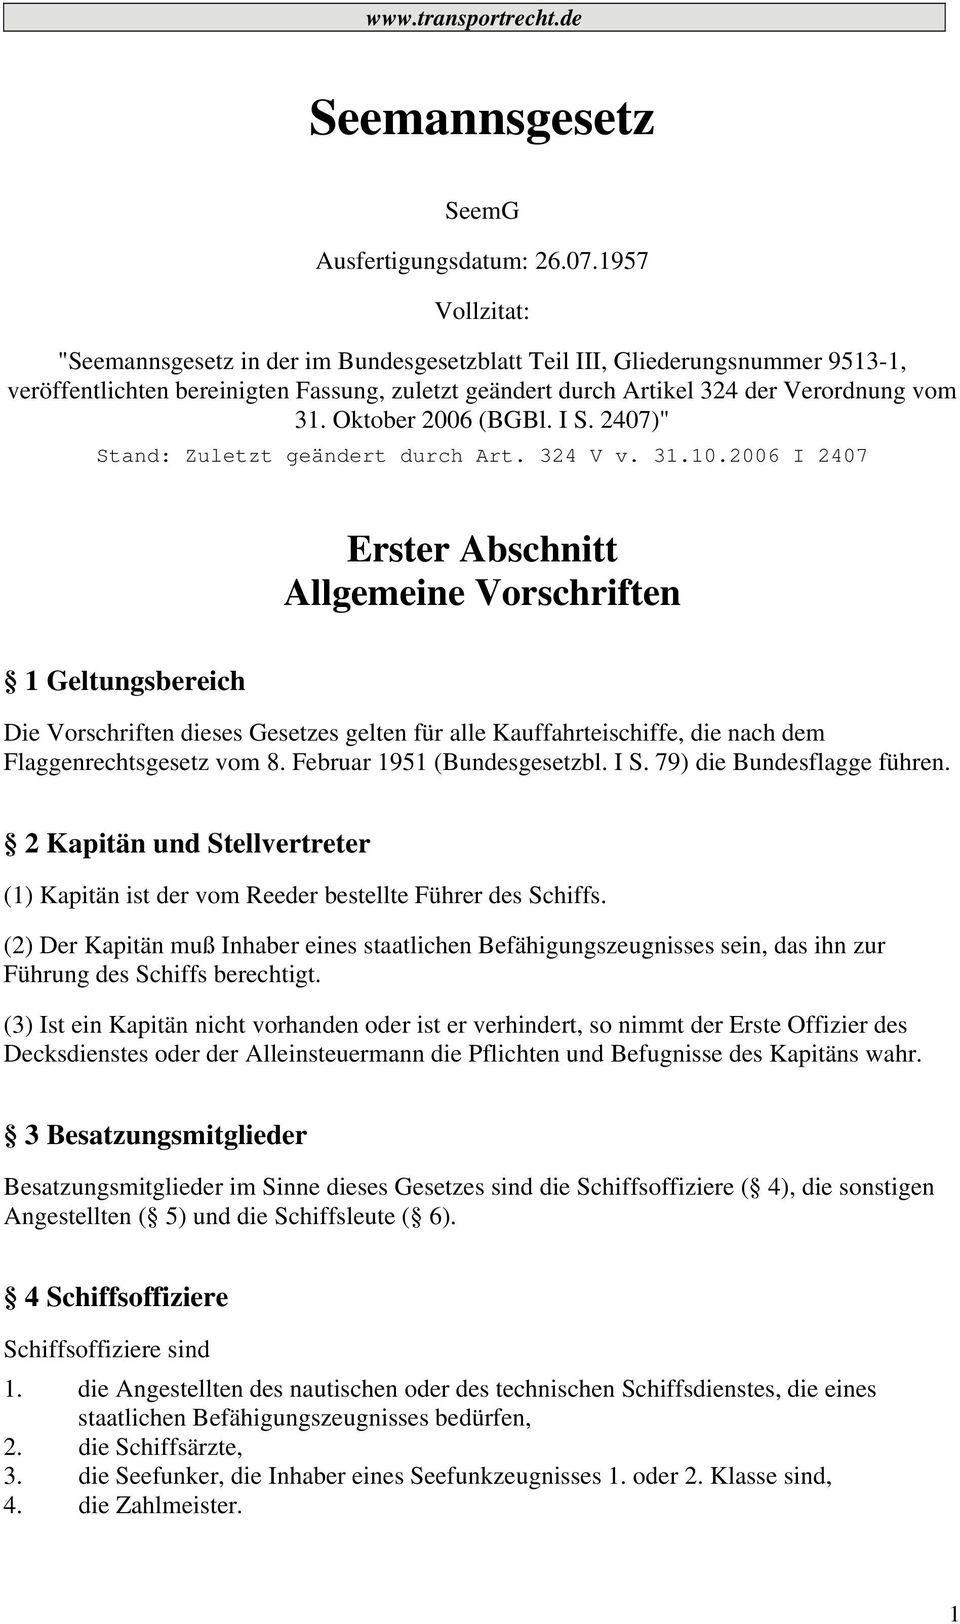 Oktober 2006 (BGBl. I S. 2407)" Stand: Zuletzt geändert durch Art. 324 V v. 31.10.